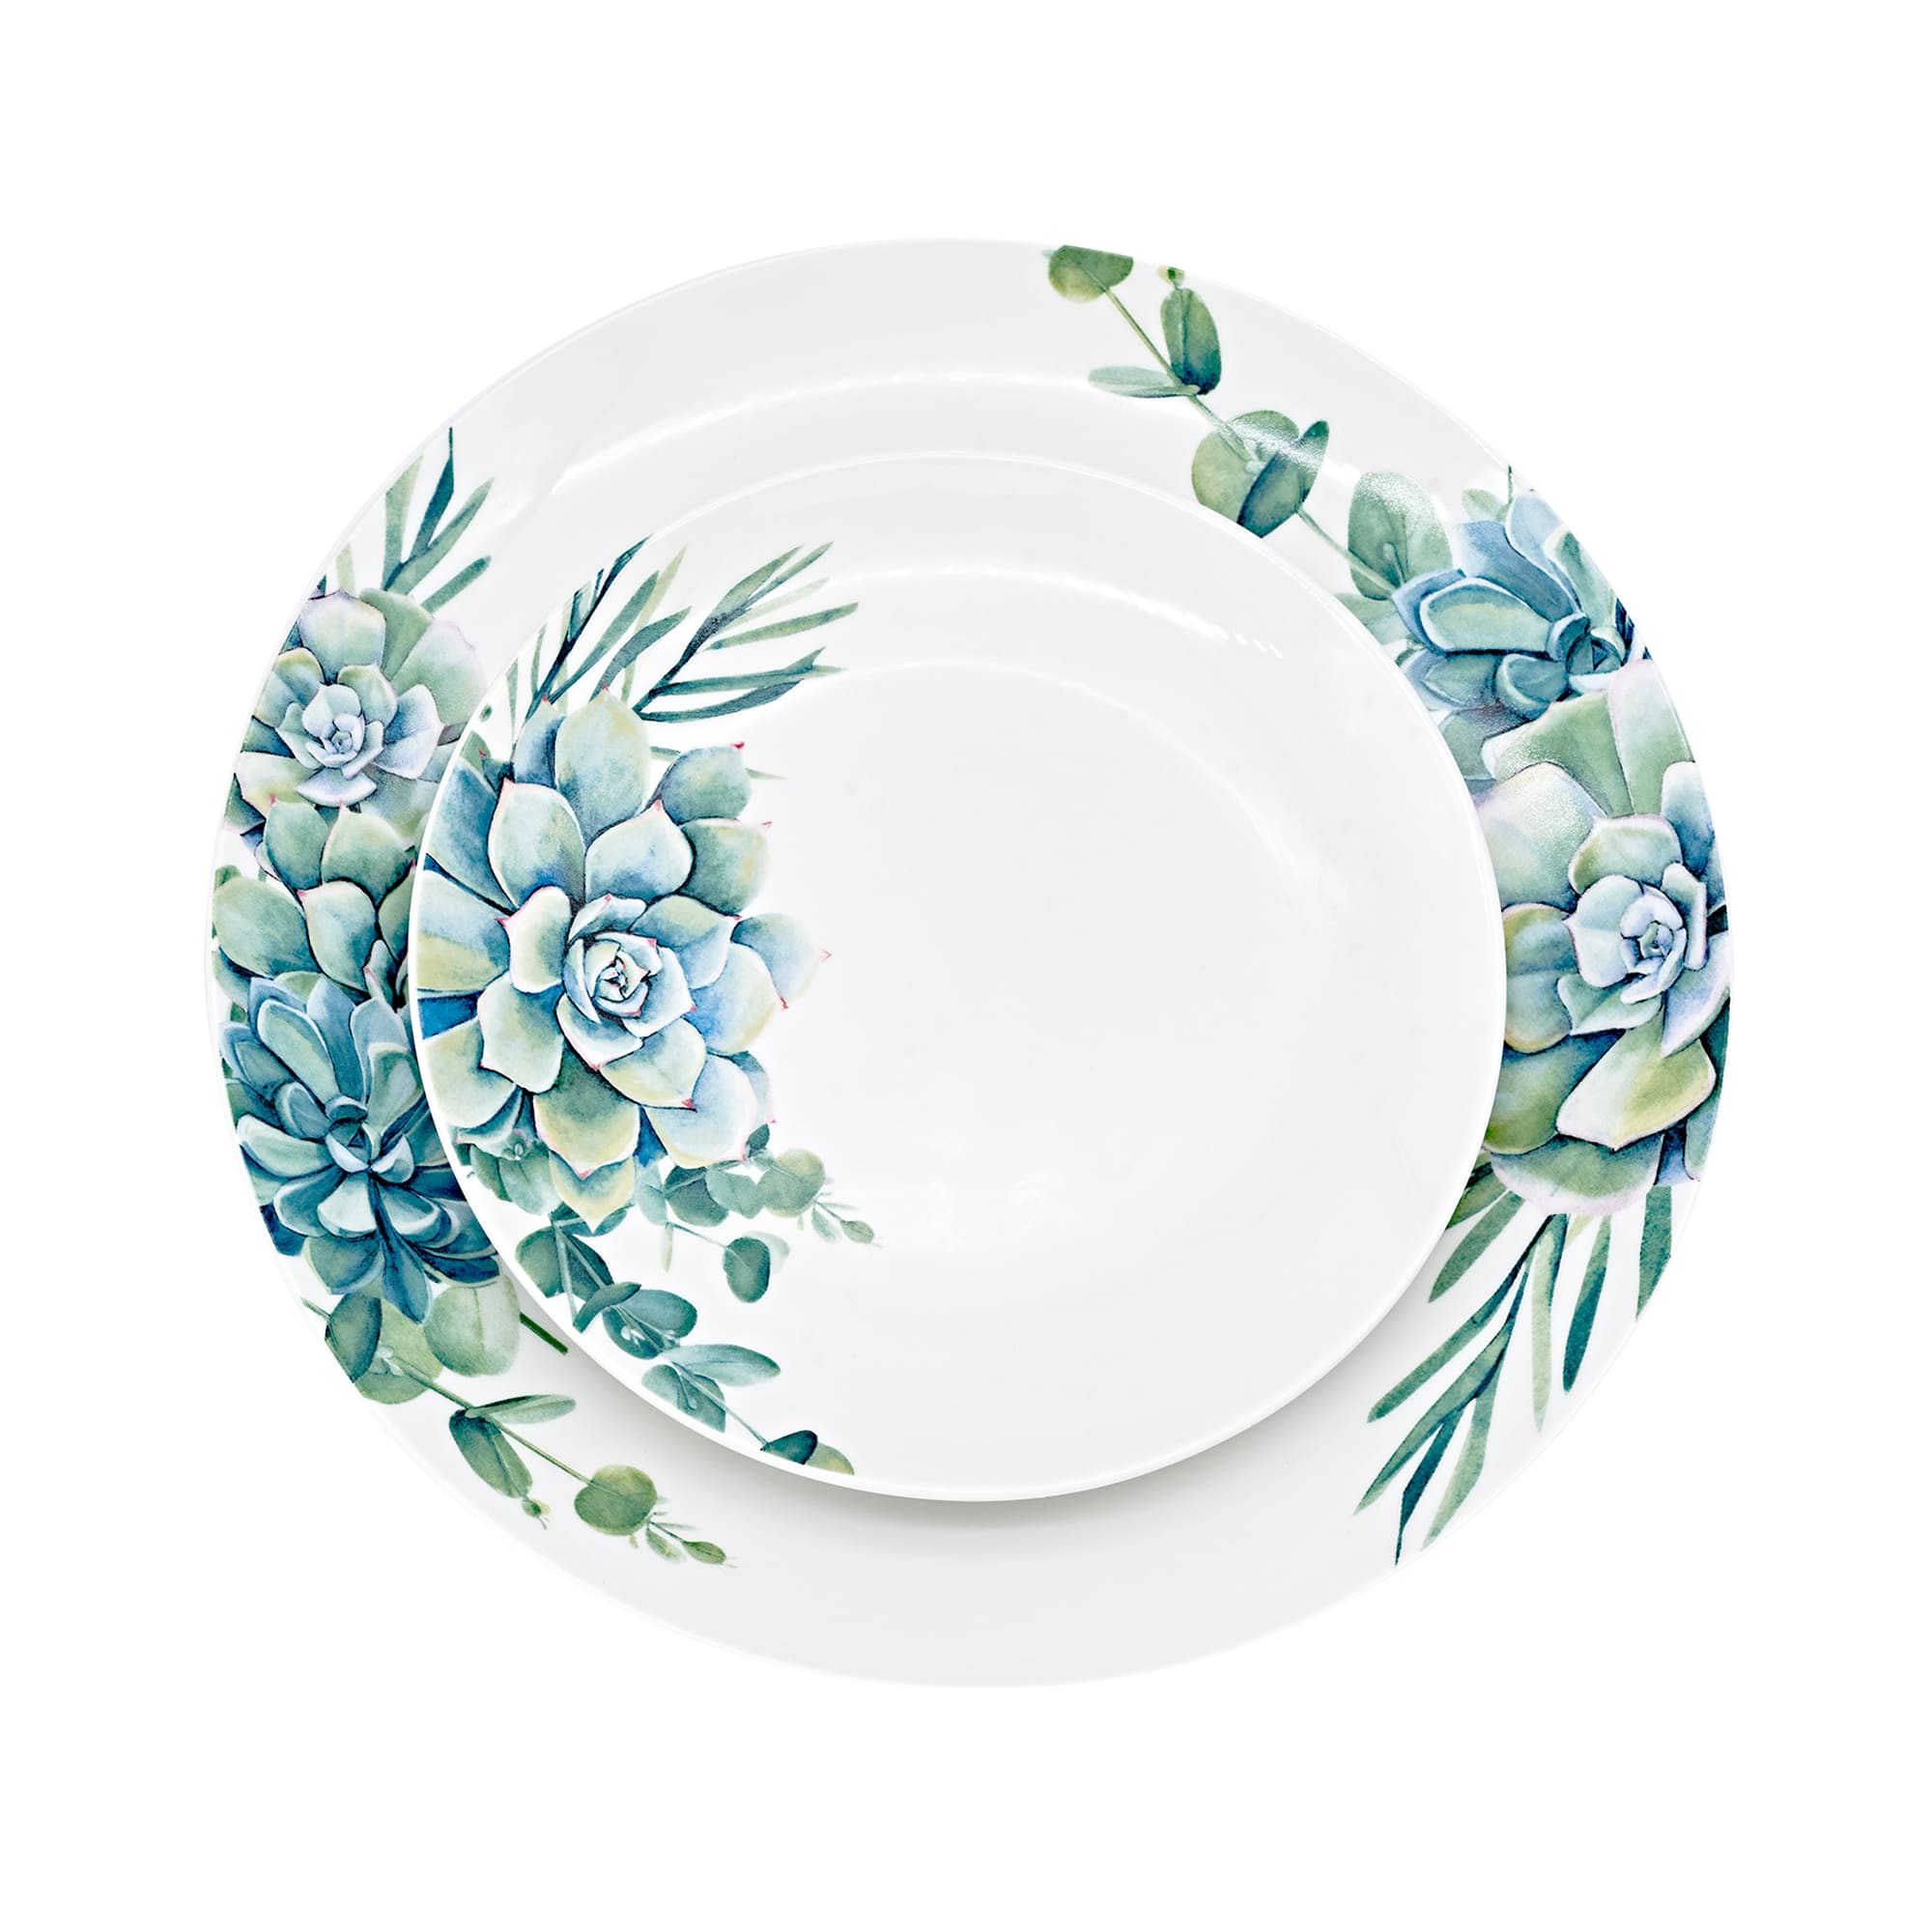 Godinger 12-pc. Service for 4 Succulent Porcelain Dinnerware Set |  Ross-Simons